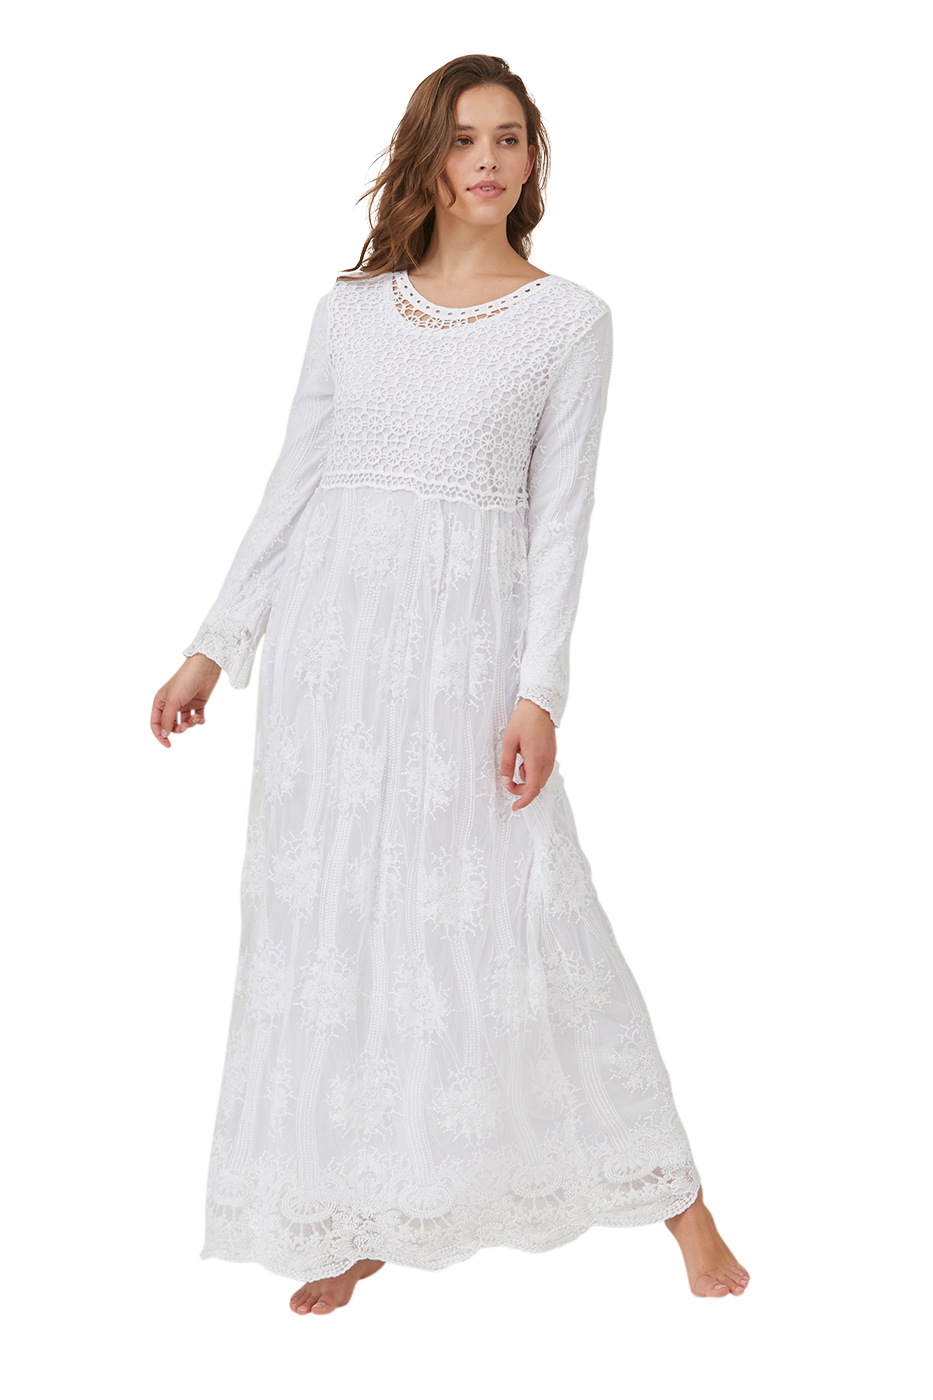 LDS Temple Dresses – Jen Clothing